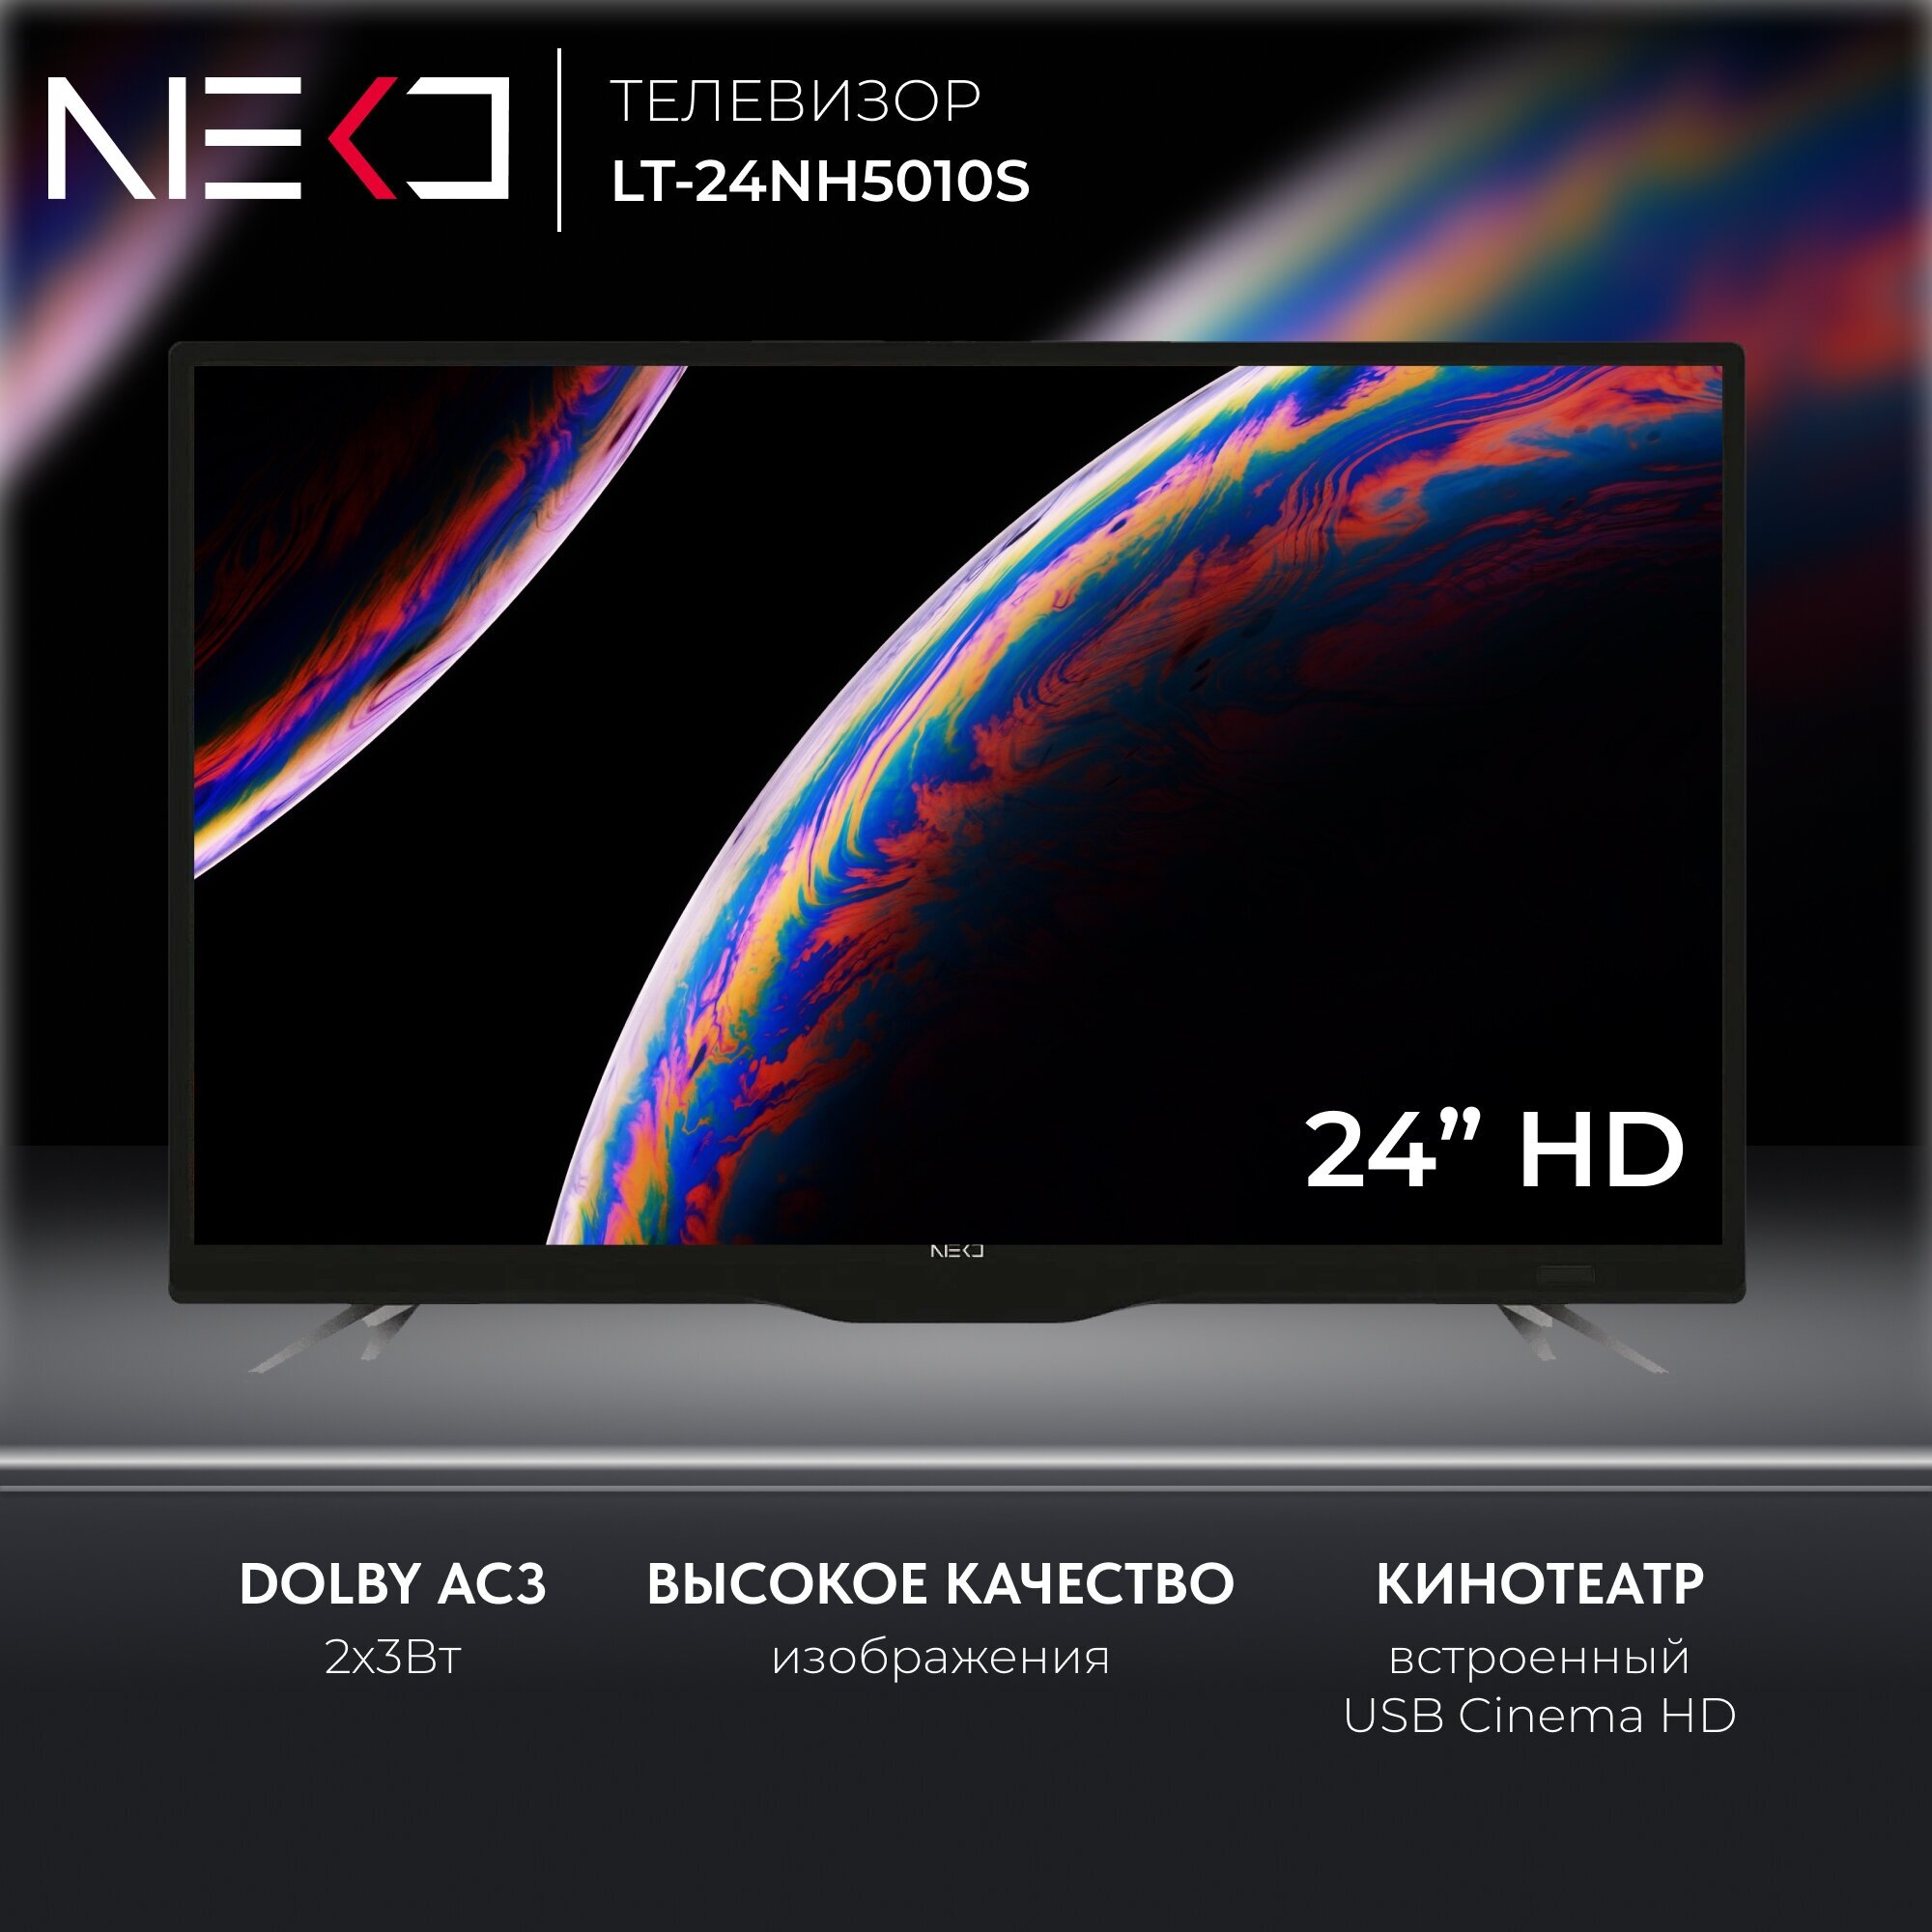 Телевизор LED 24" NEKO LT-24NH5010S